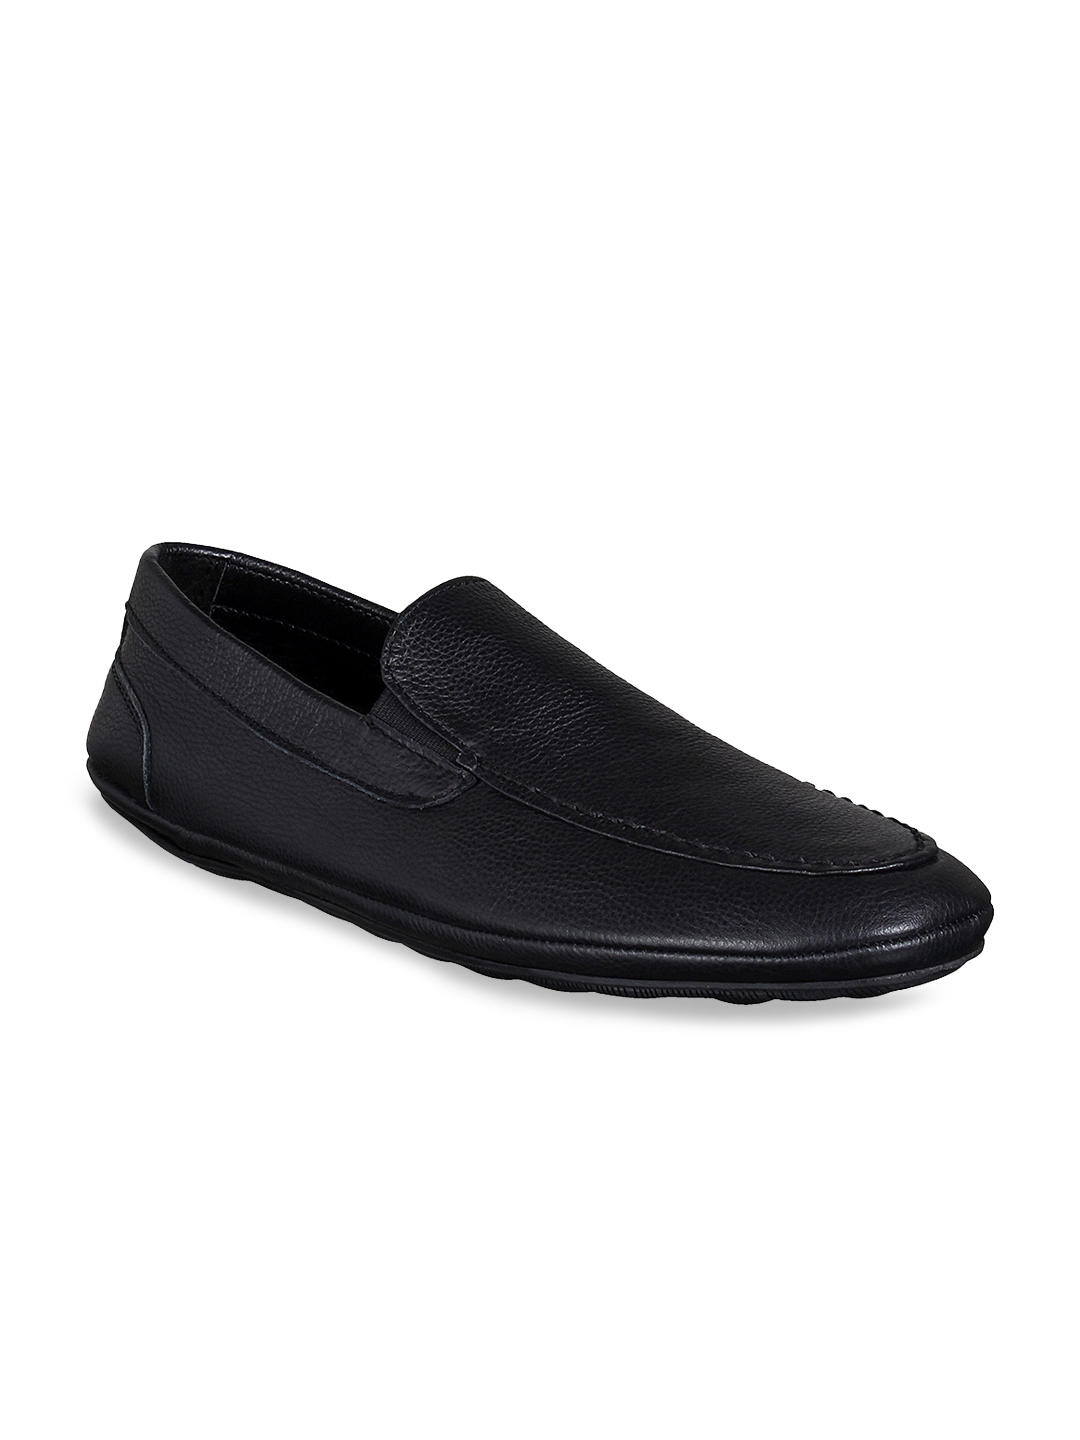 Buy Mocas Men Black Leather Loafers 